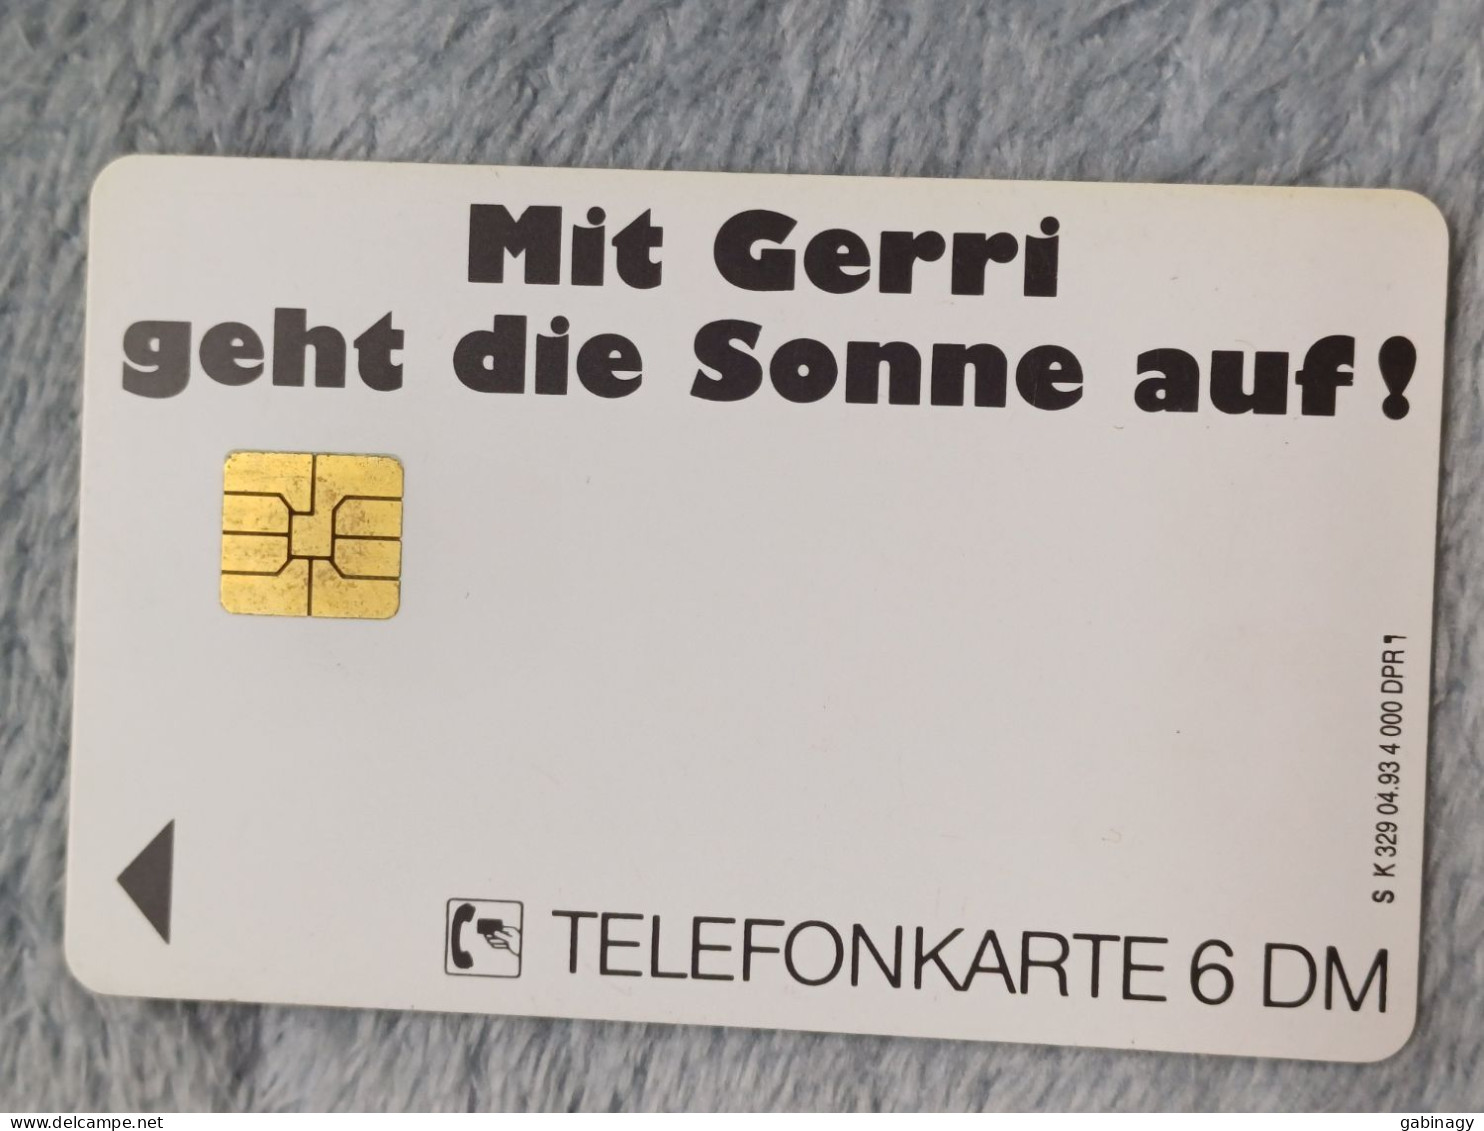 GERMANY-1220 - K 0329 - Gerri 2 - Mit Gerri Geht Die Sonne Auft - 4.000ex. - K-Series: Kundenserie